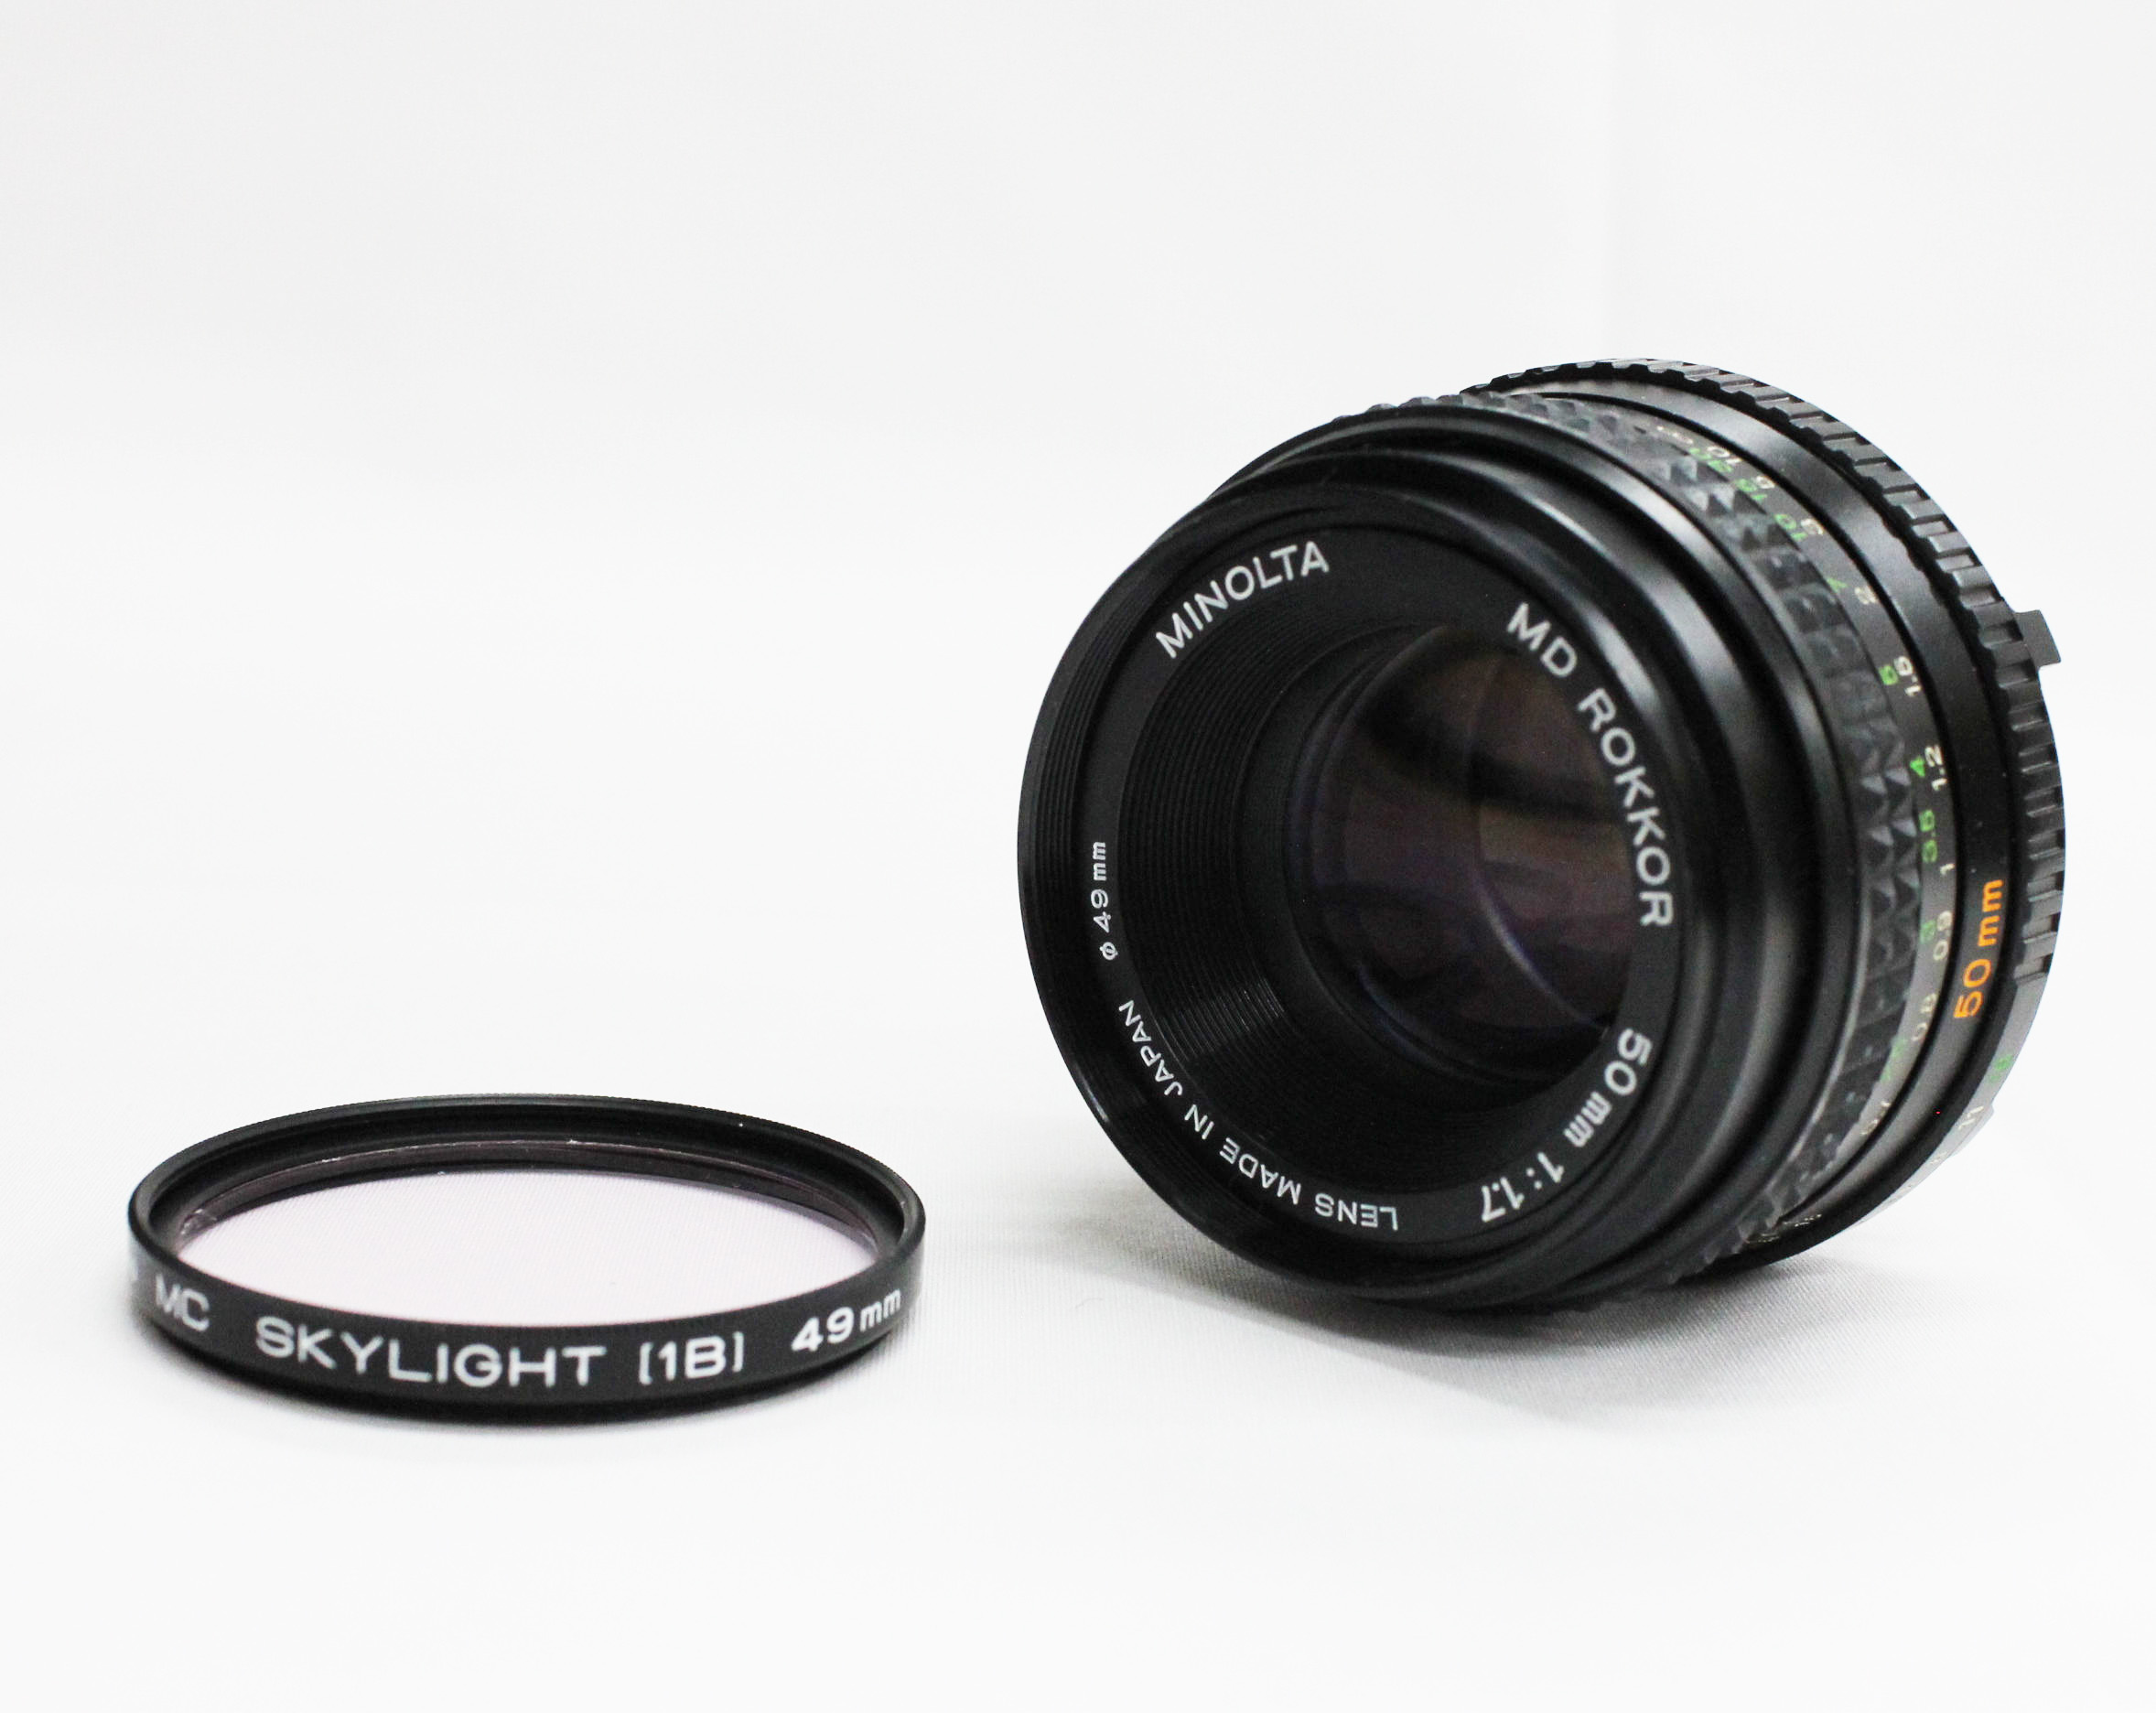 [Excellent++++] Minolta MD Rokkor 50mm F/1.7 MF Prime Lens from Japan